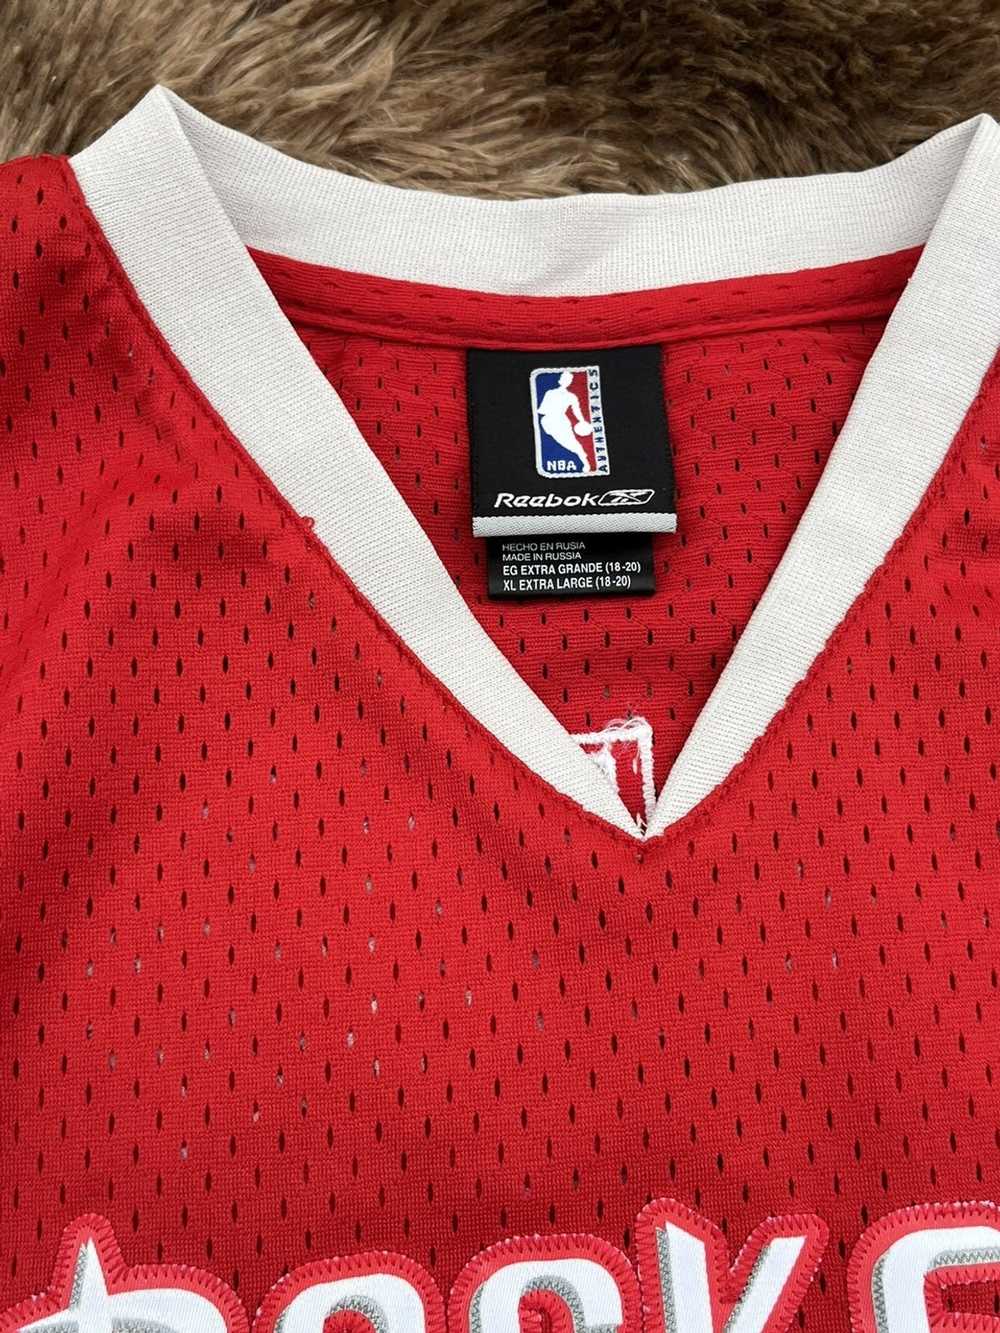 NBA × Reebok Tracy McGrady Stitched reebok jersey - image 3